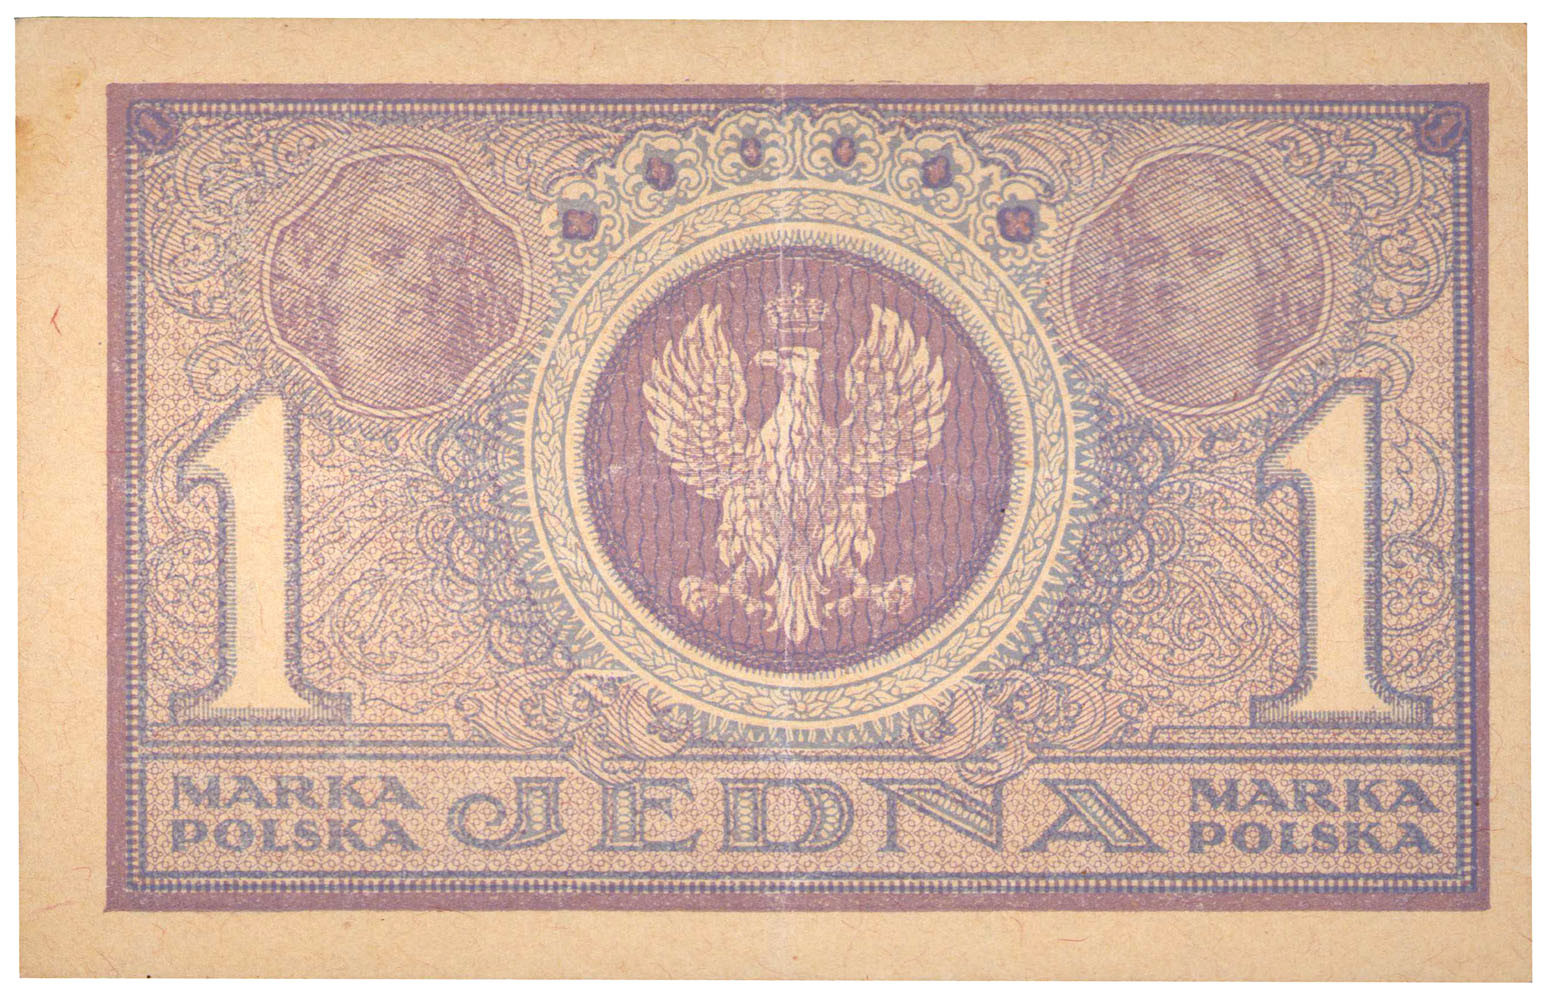 1 marka polska 1919 seria IBI